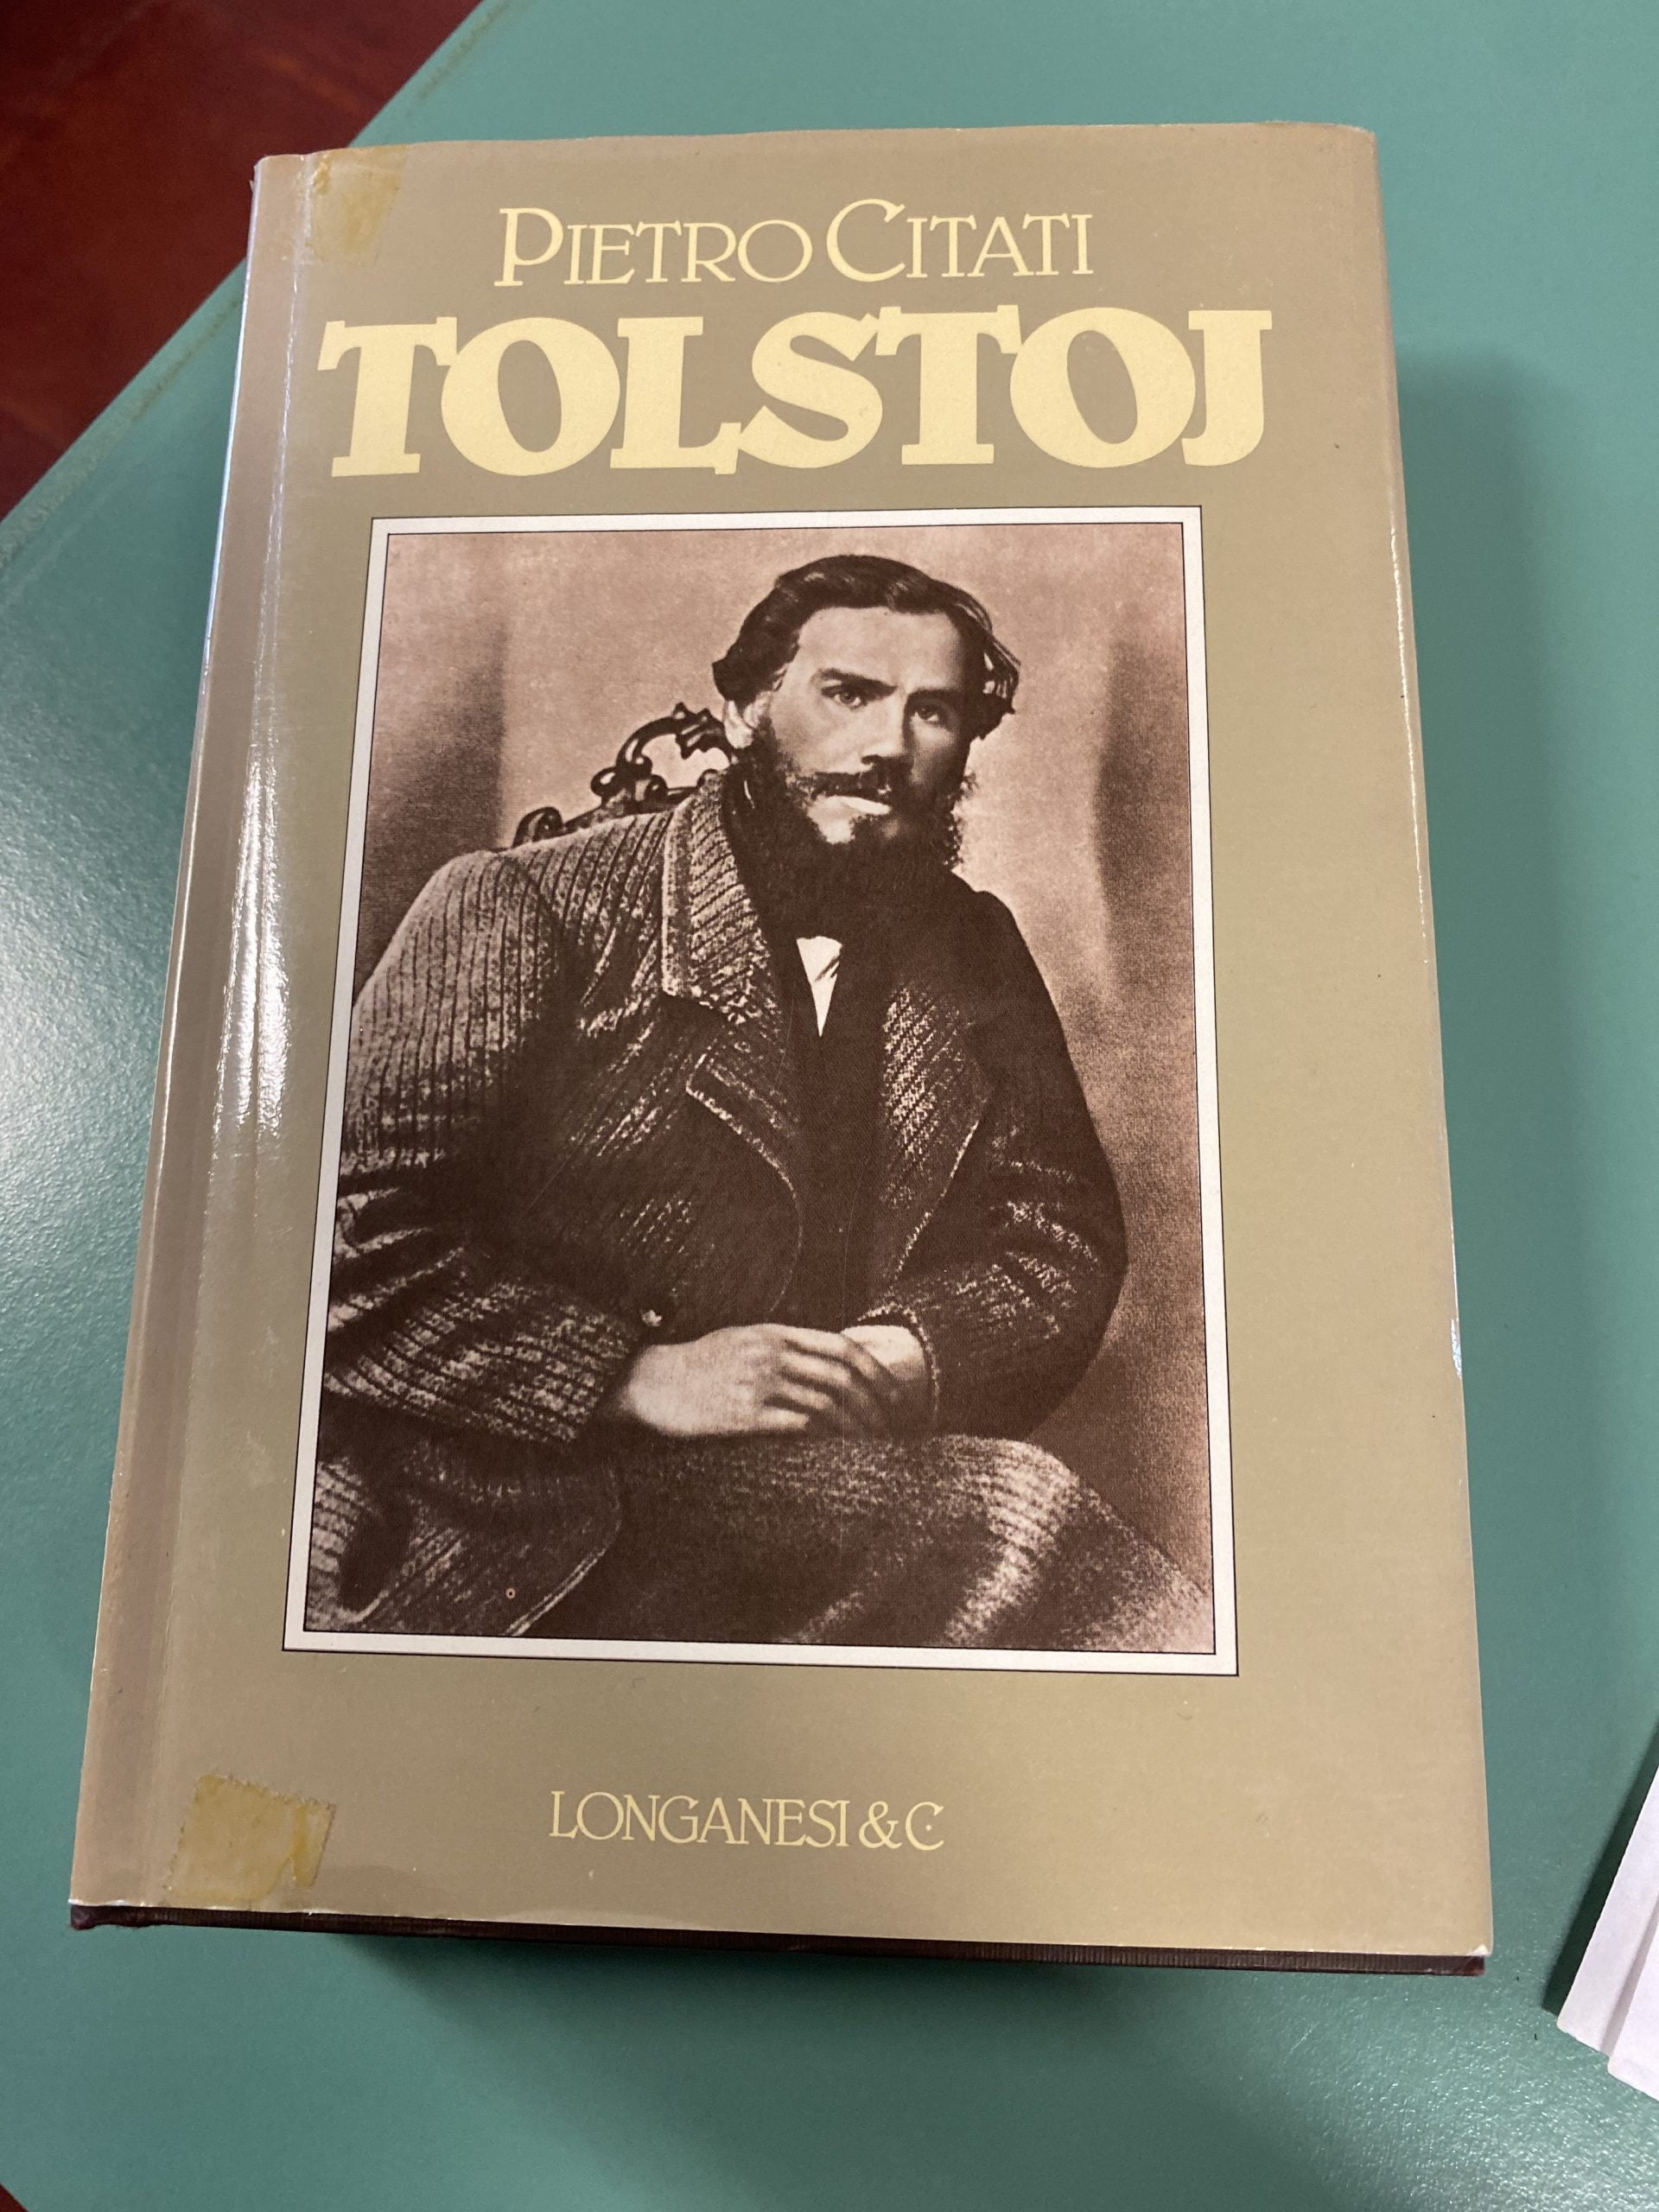 “Tolstoj” – Pietro Citati